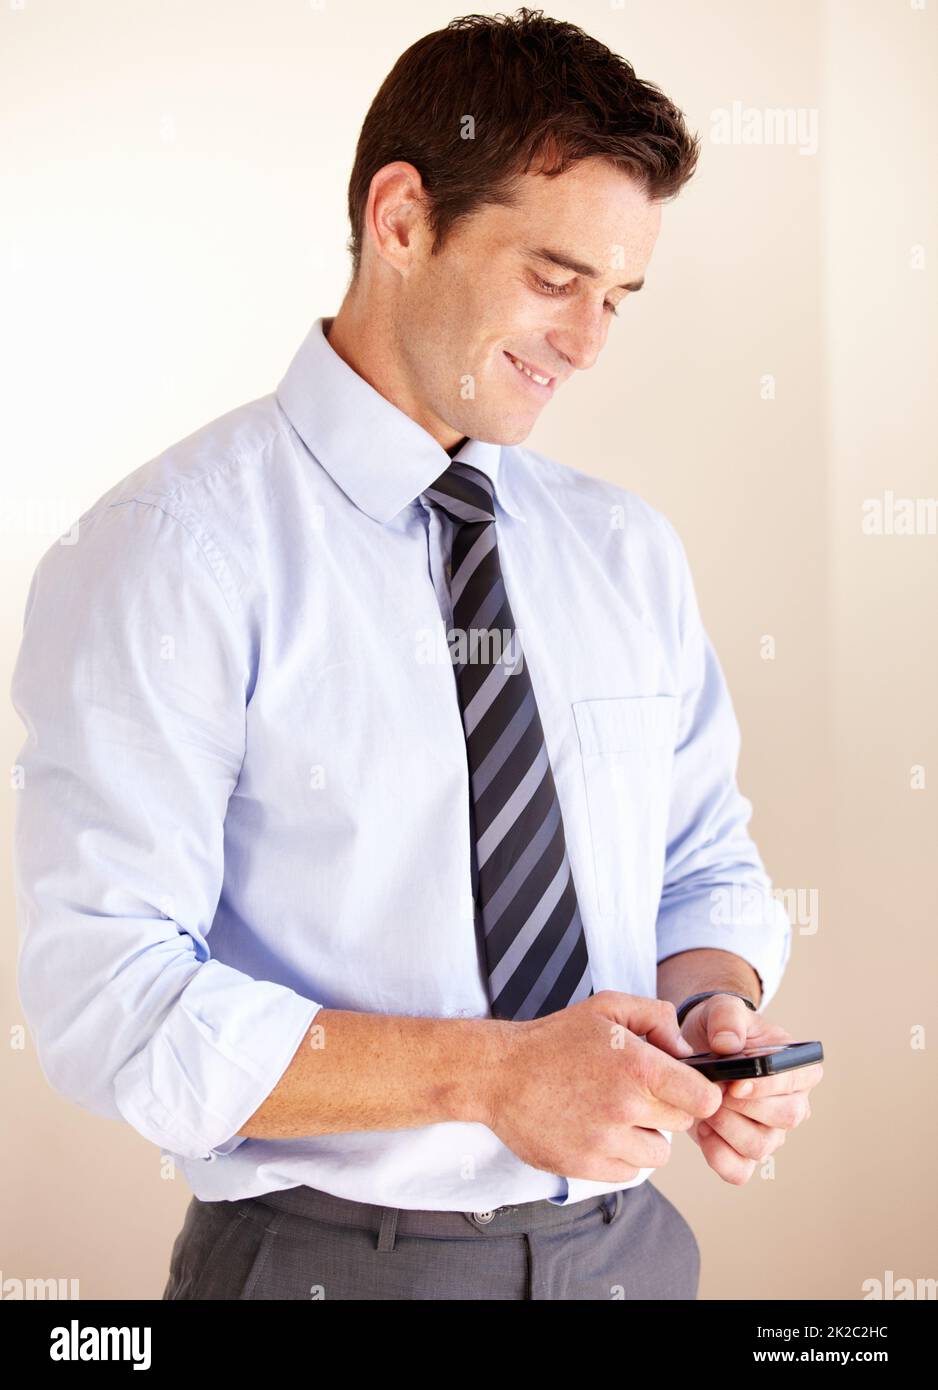 Envoyer un SMS à un être cher. Un jeune homme d'affaires souriant envoie un message texte. Banque D'Images